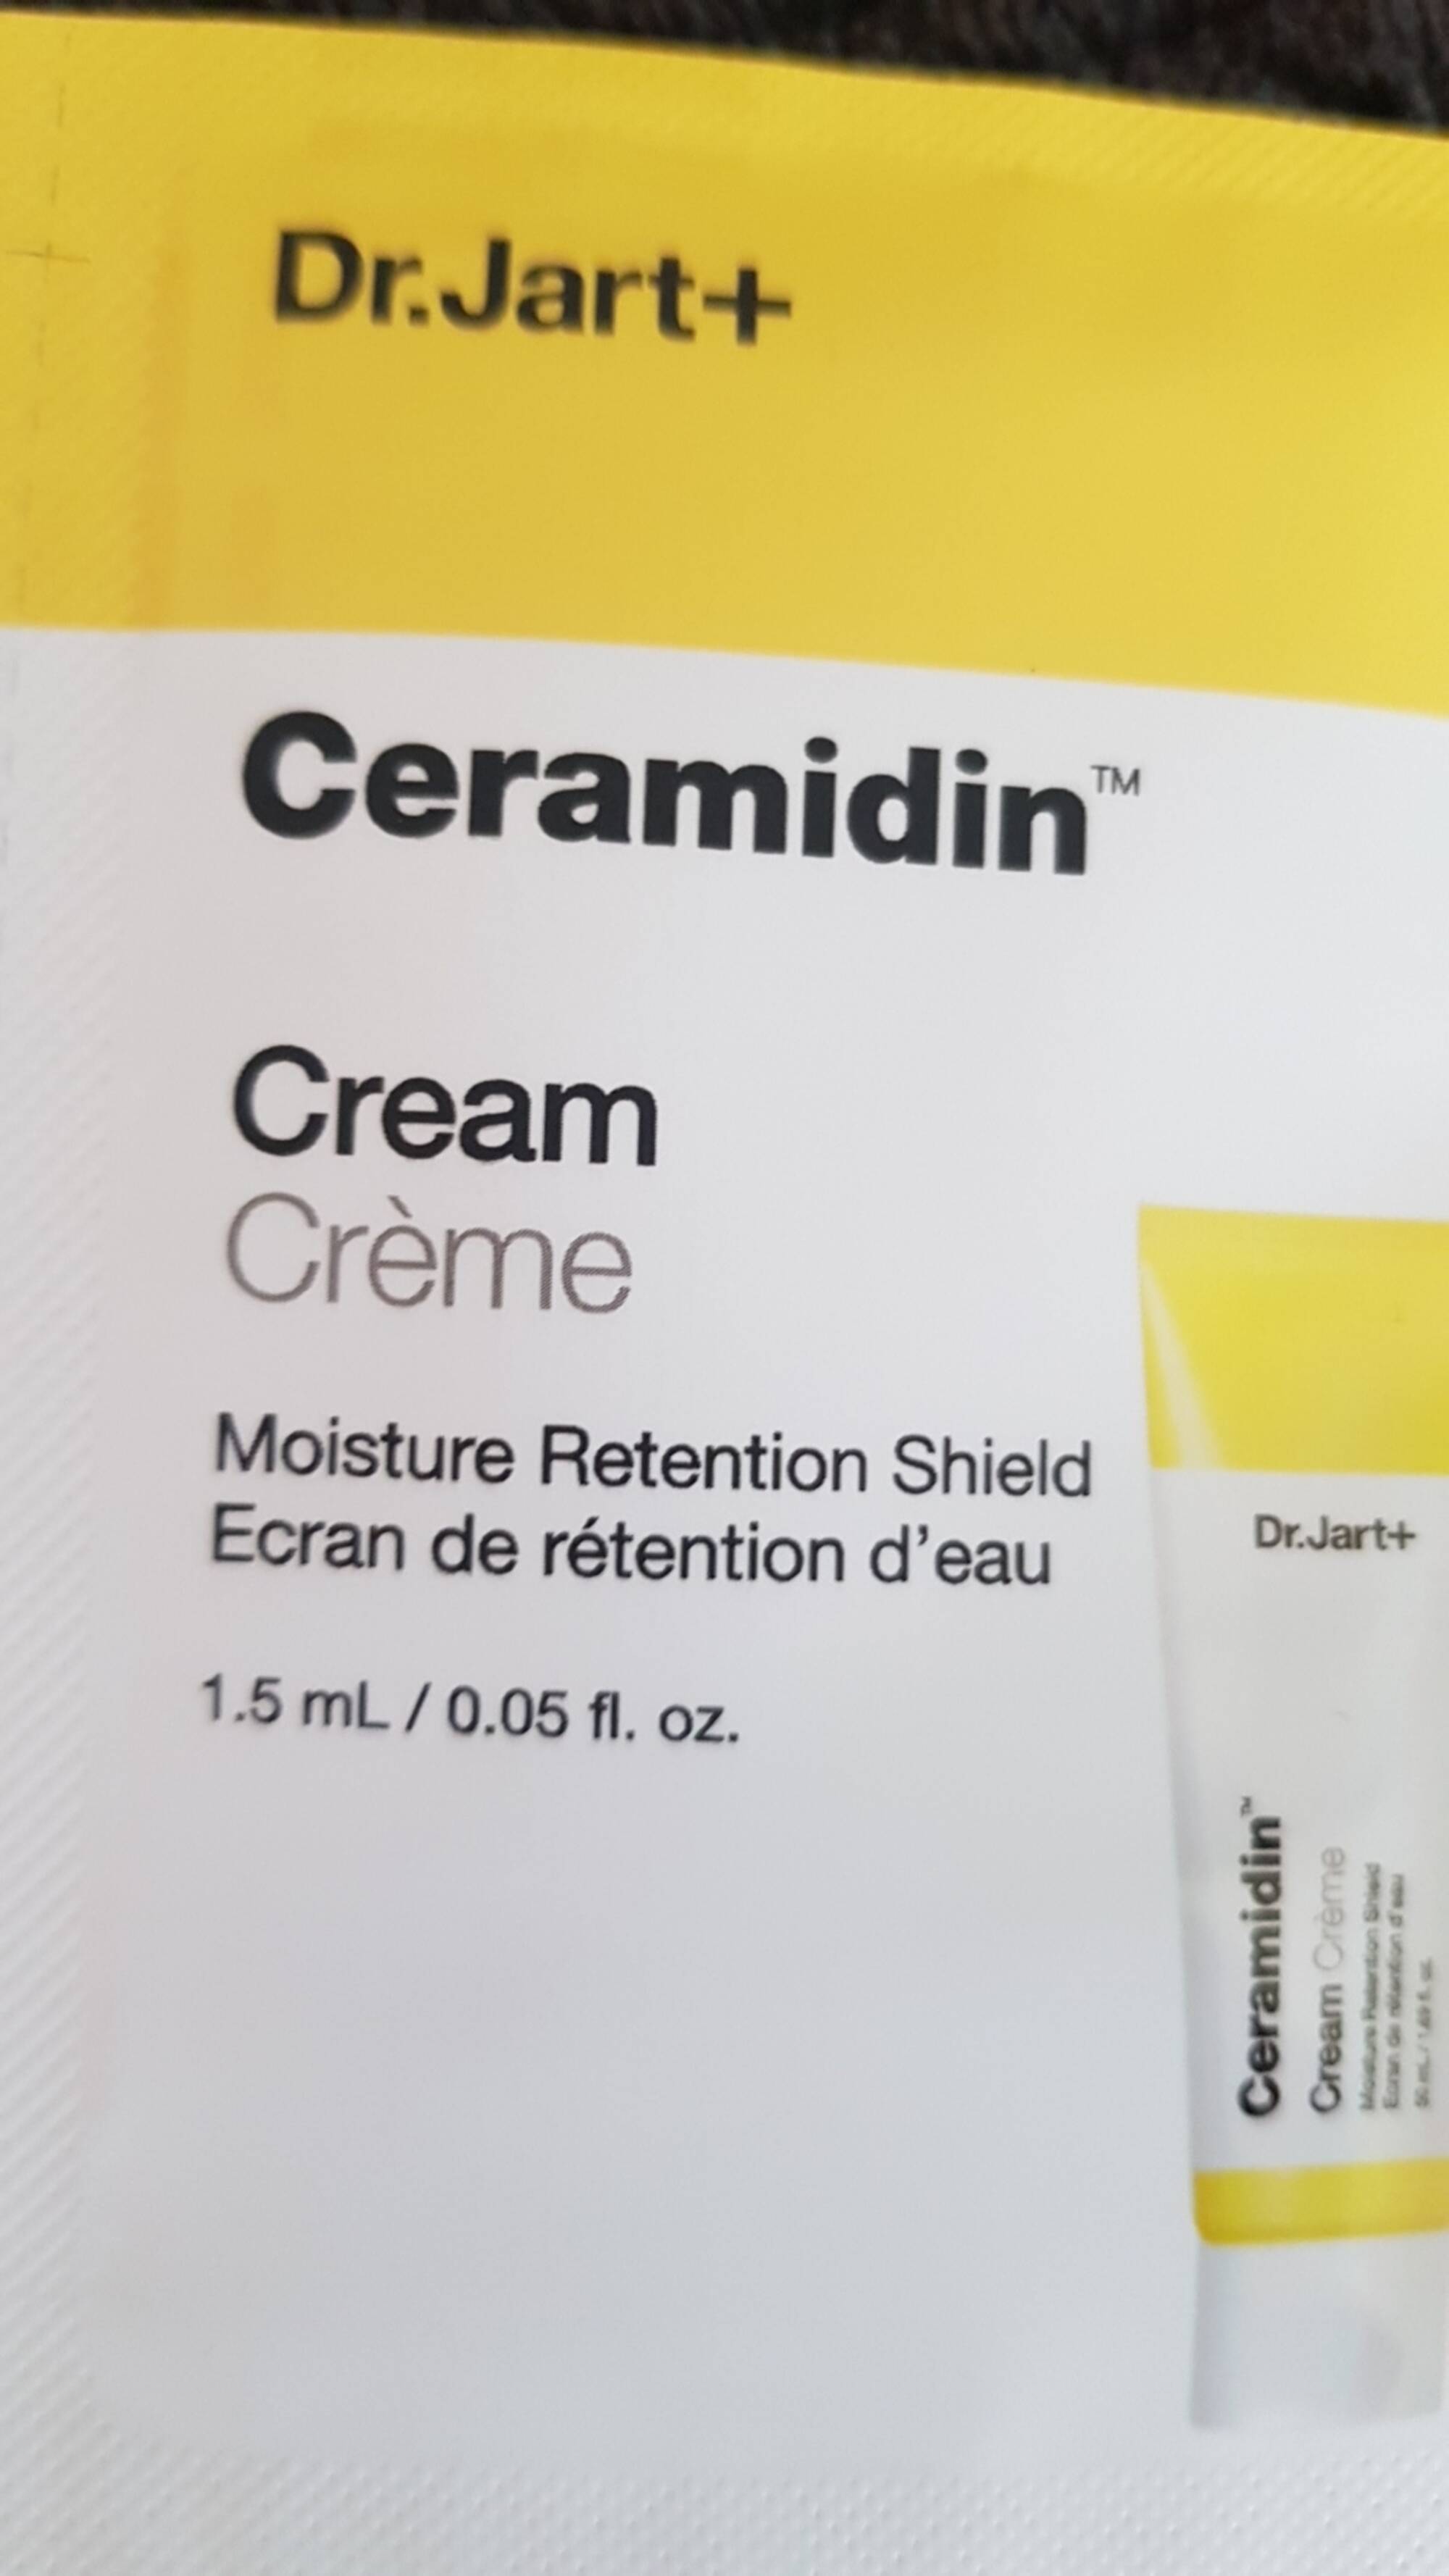 DR.JART+ - Ceramidin - Crème ecran de rétention d'eau